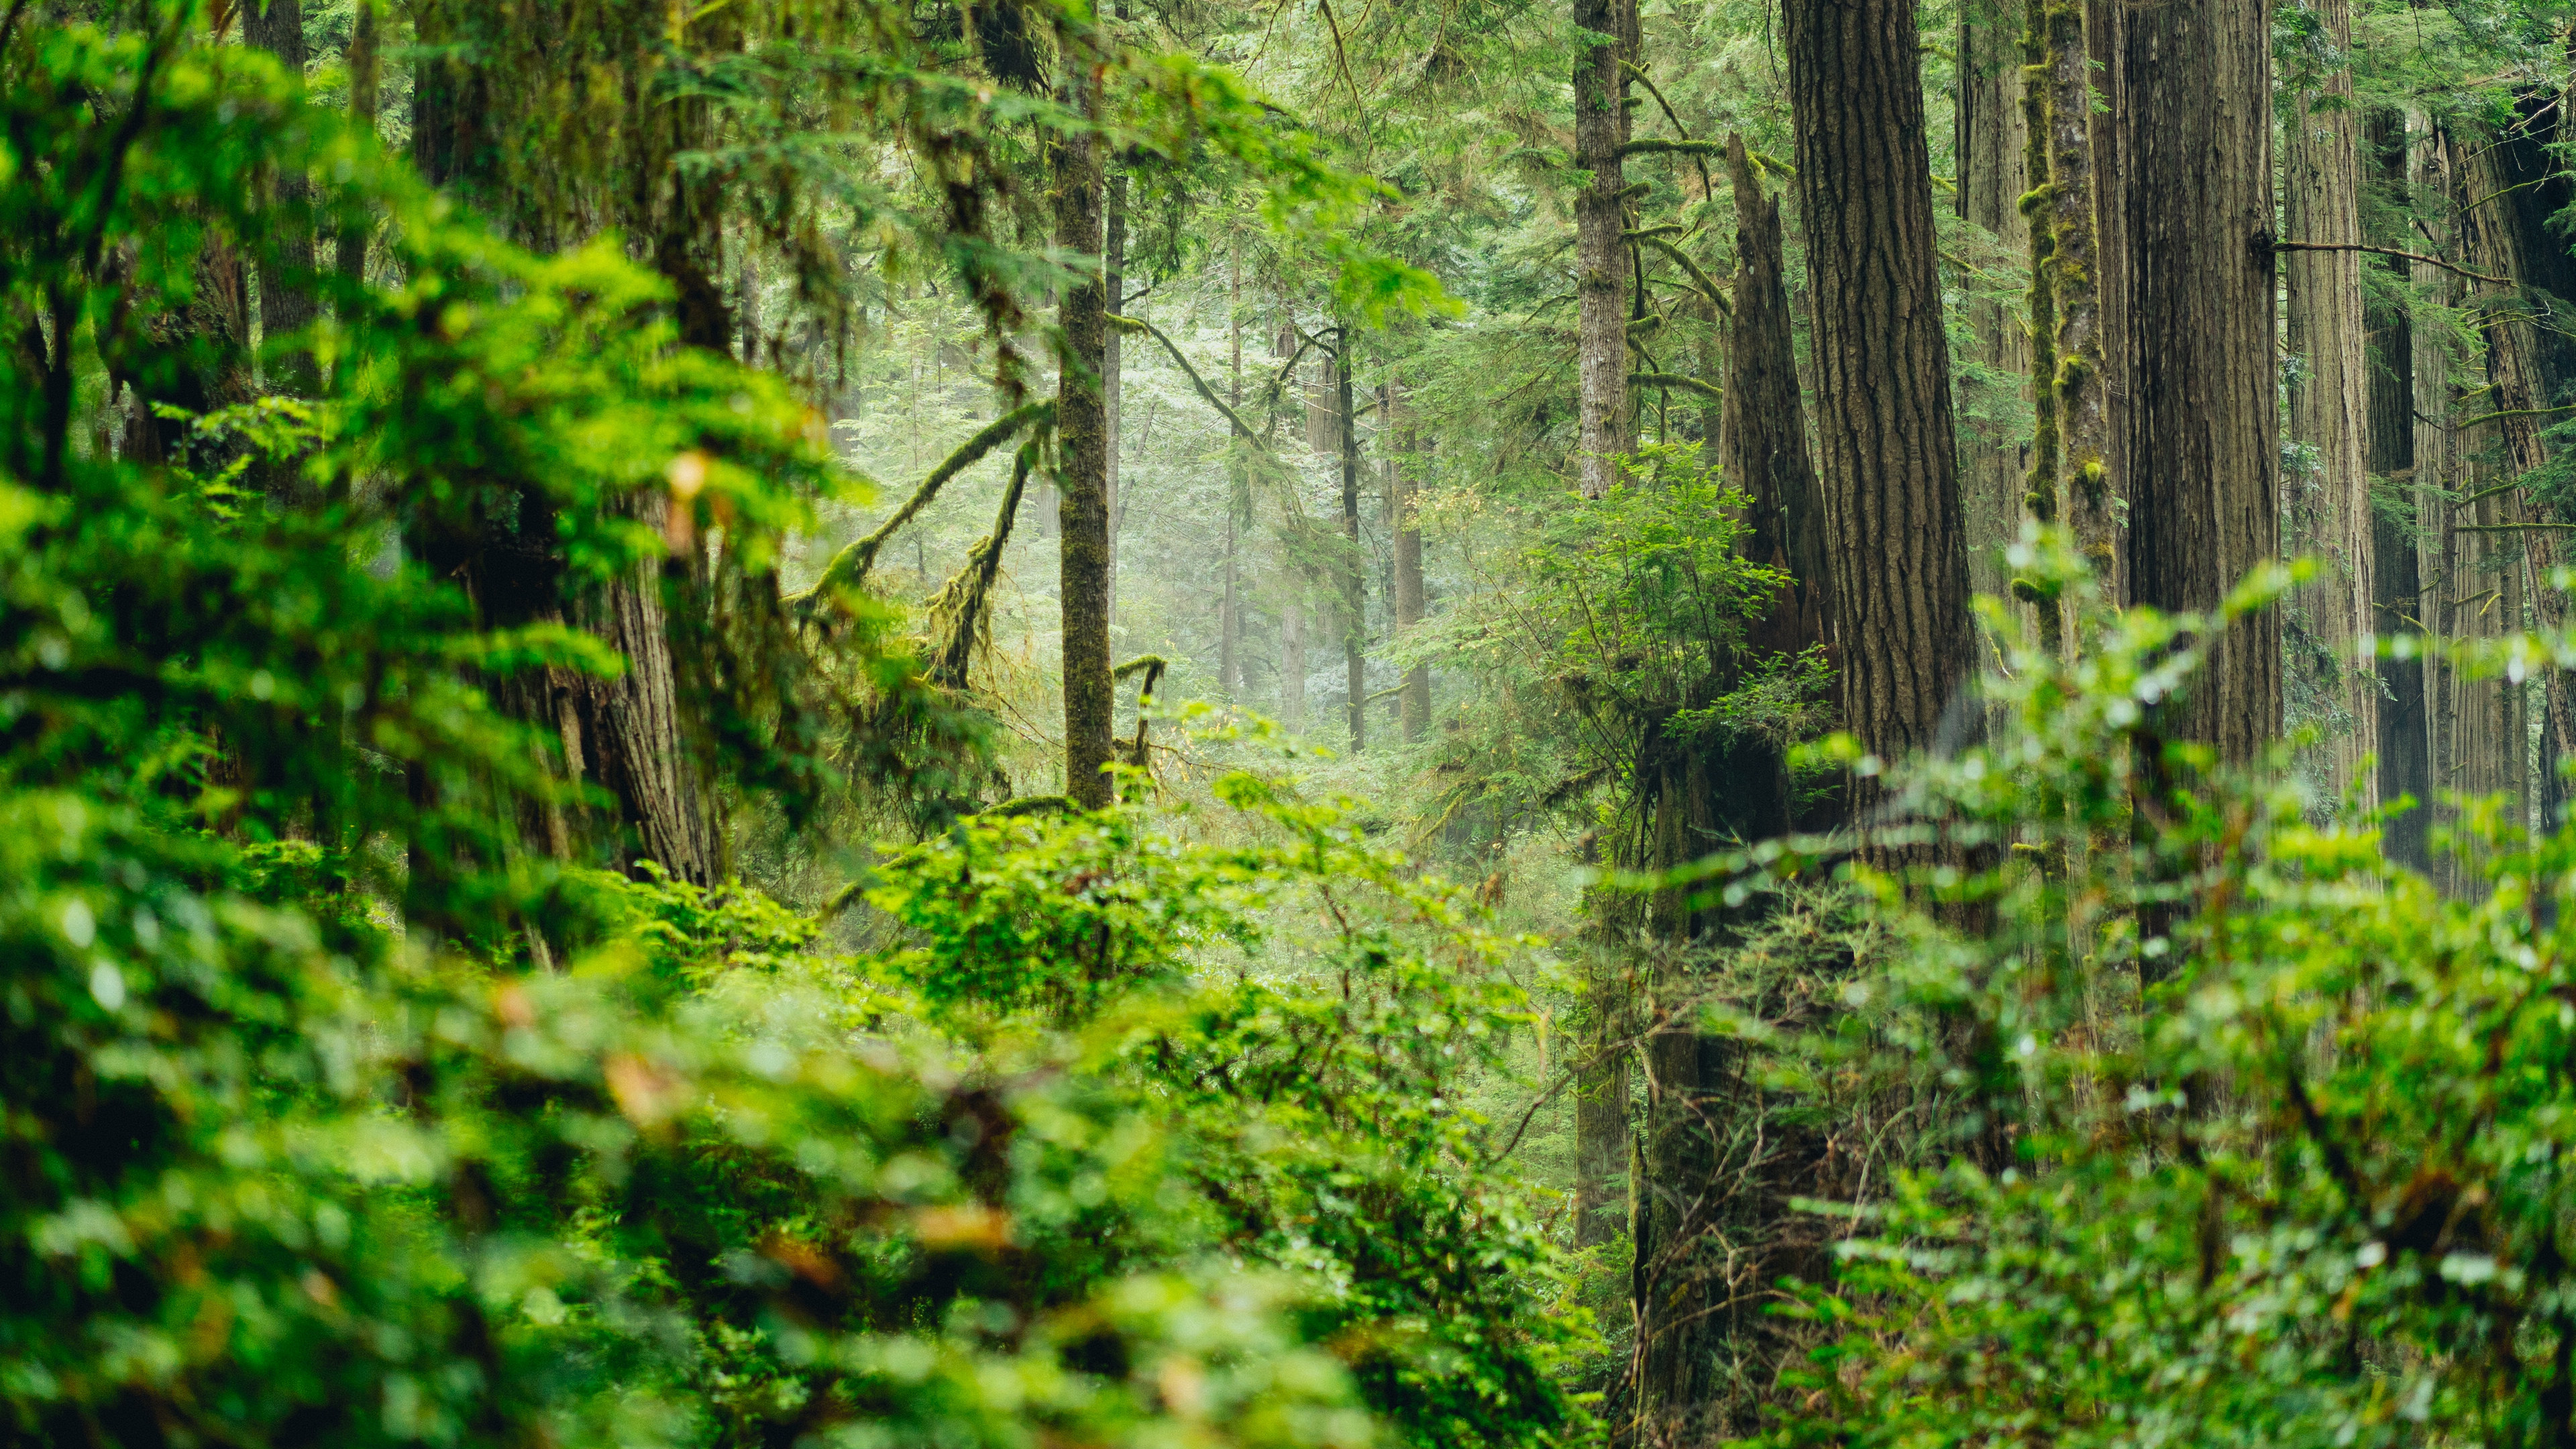 静谧优美的森林风景图片壁纸